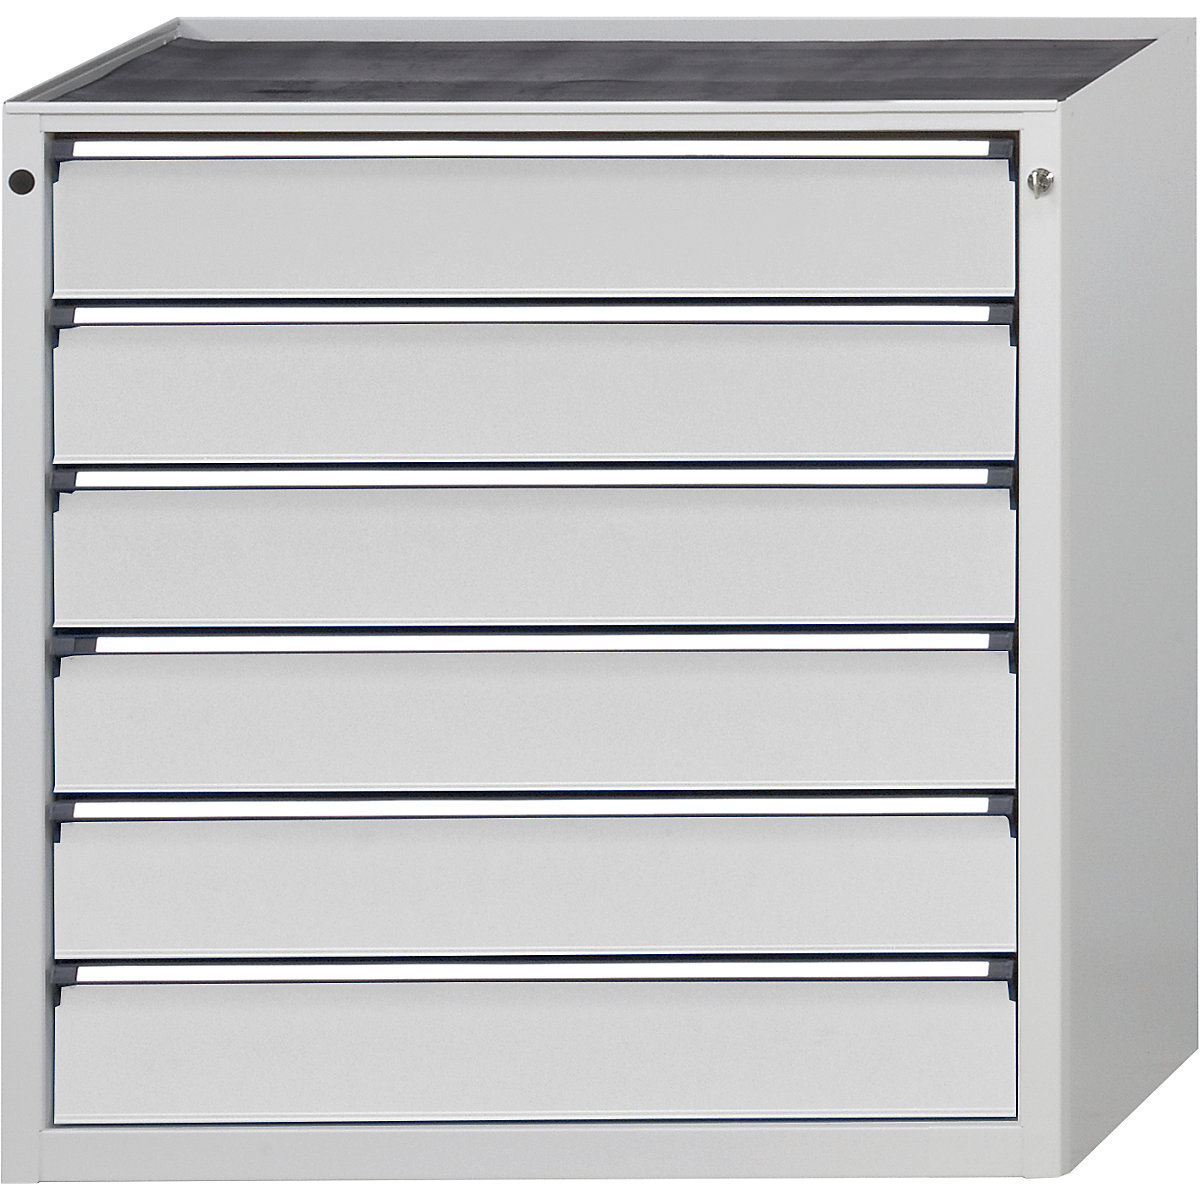 Armoire à tiroirs – ANKE, l x p 910 x 675 mm, charge max. tiroirs 200 kg, 6 tiroirs, hauteur 980 mm, façade gris clair-15